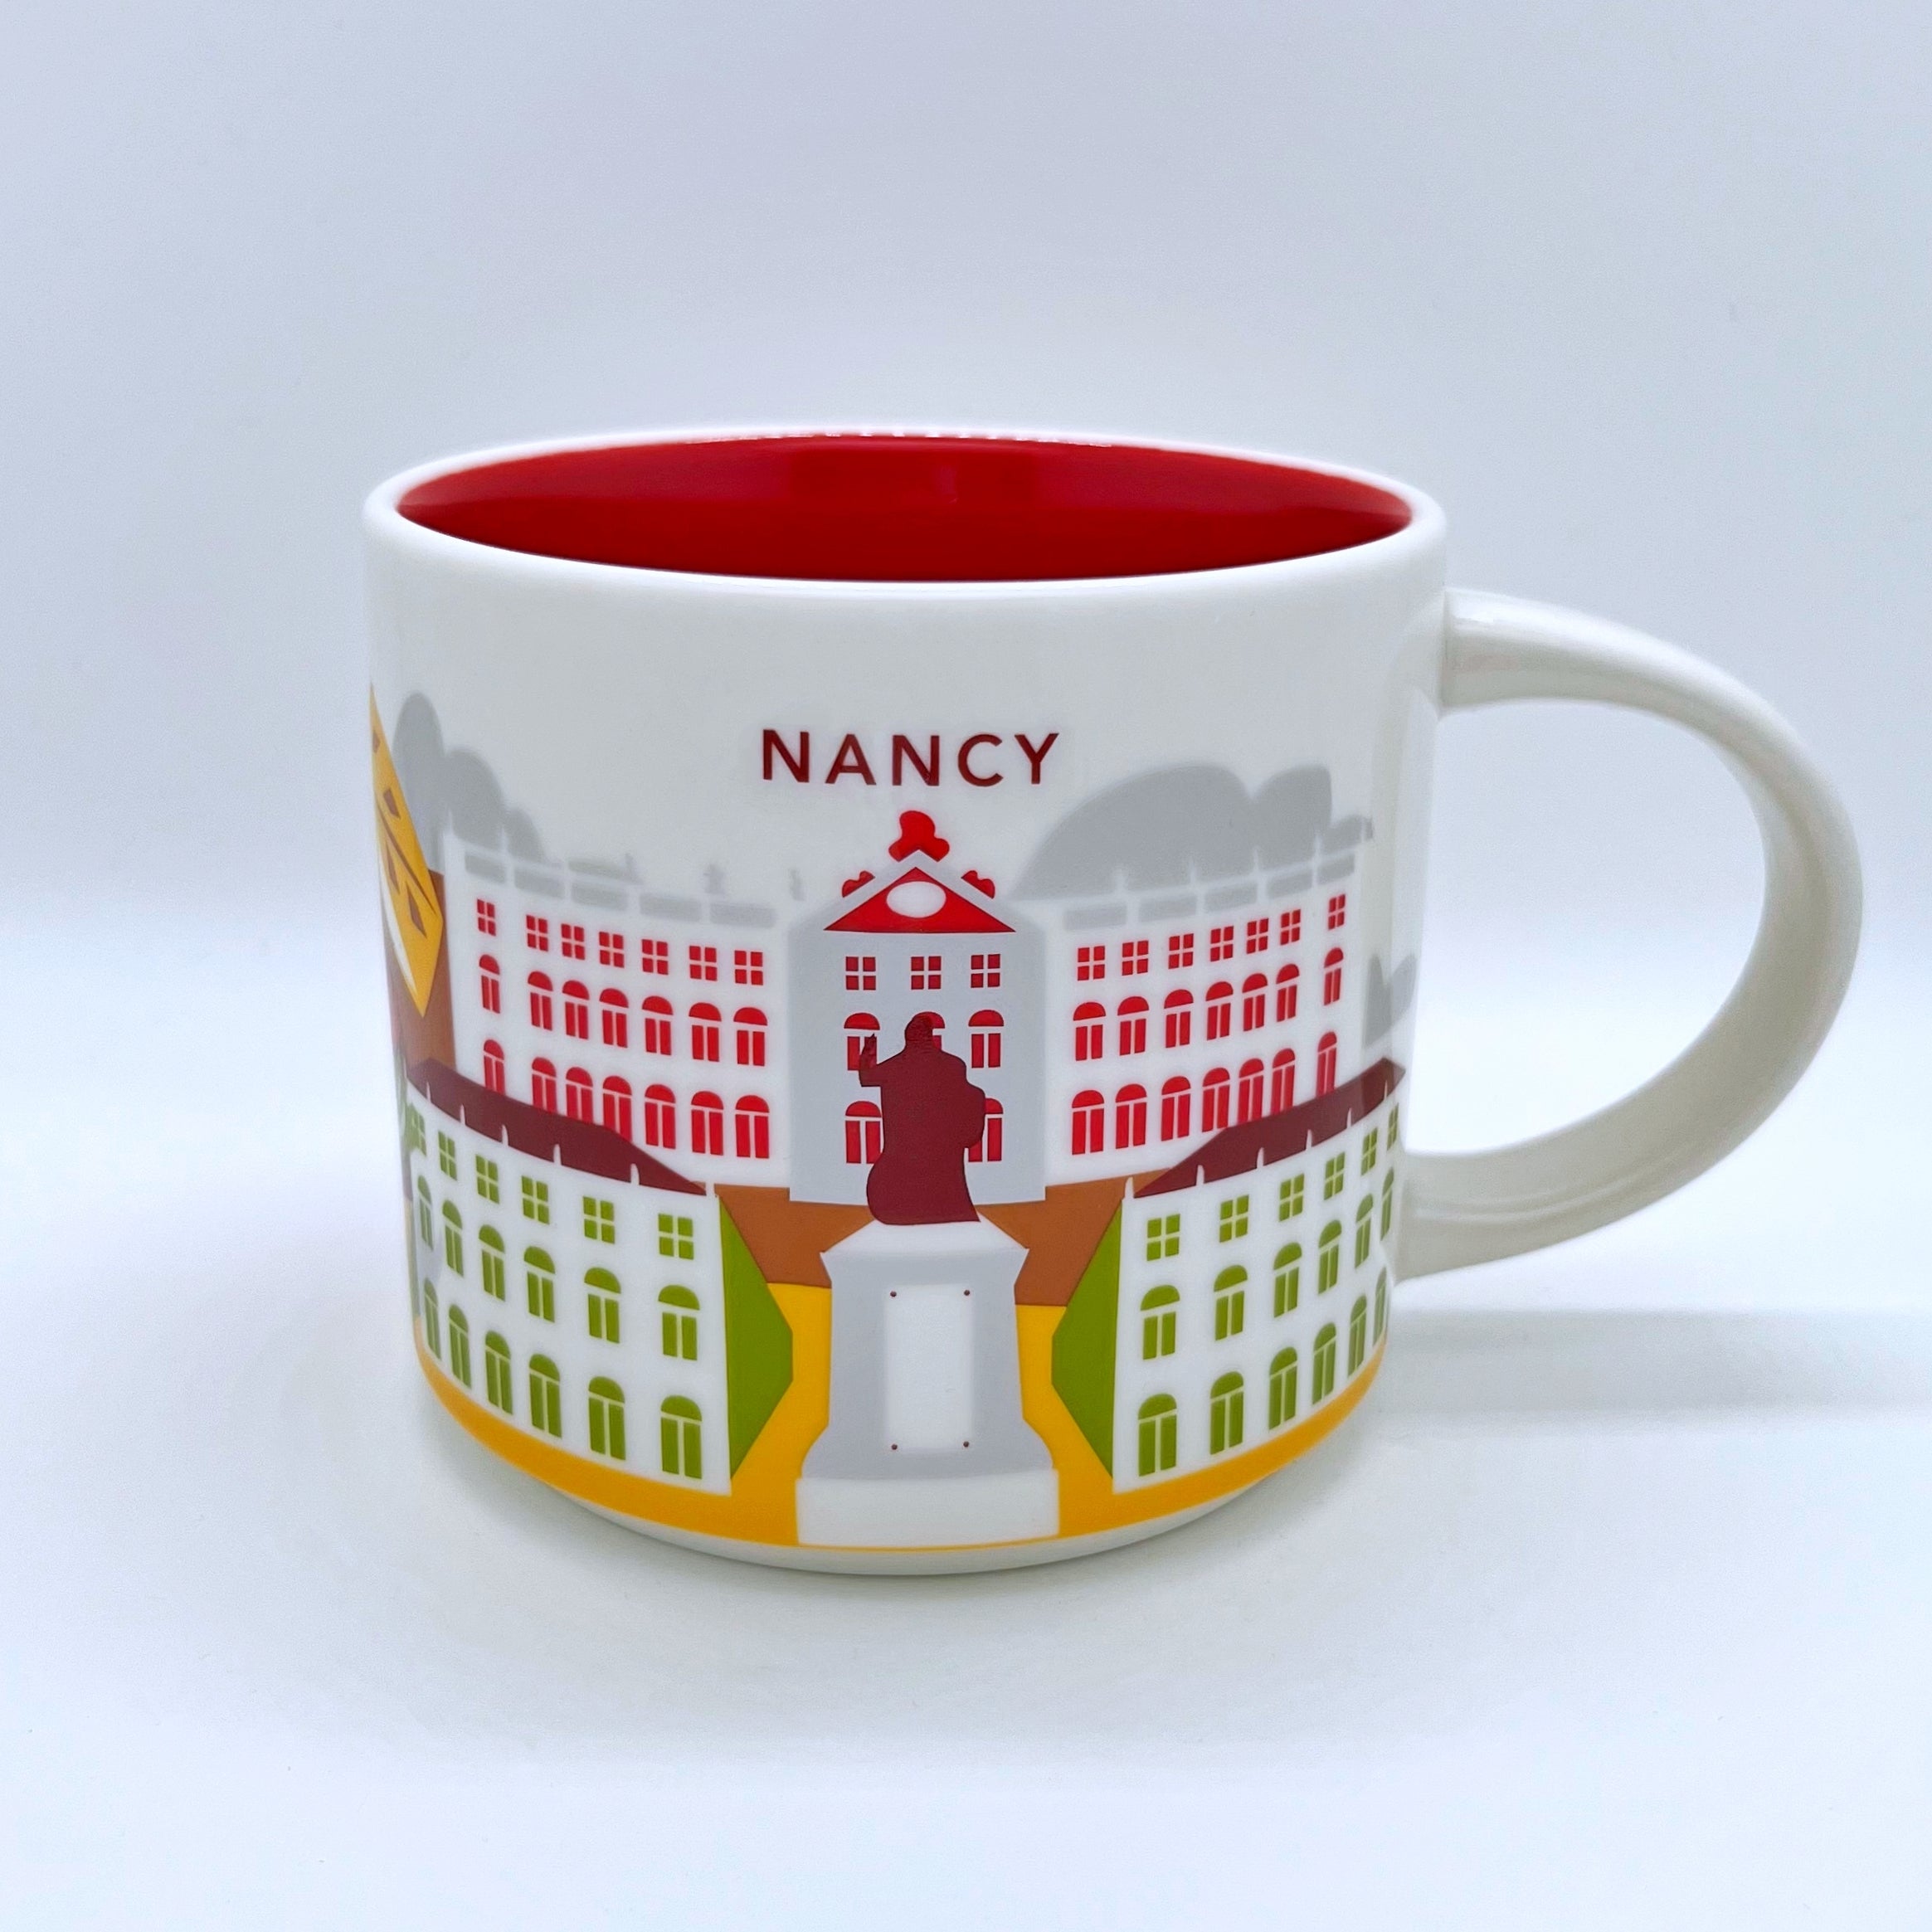 Kaffee Cappuccino oder Tee Tasse von Starbucks mit gemalten Bildern aus der Stadt Nancy